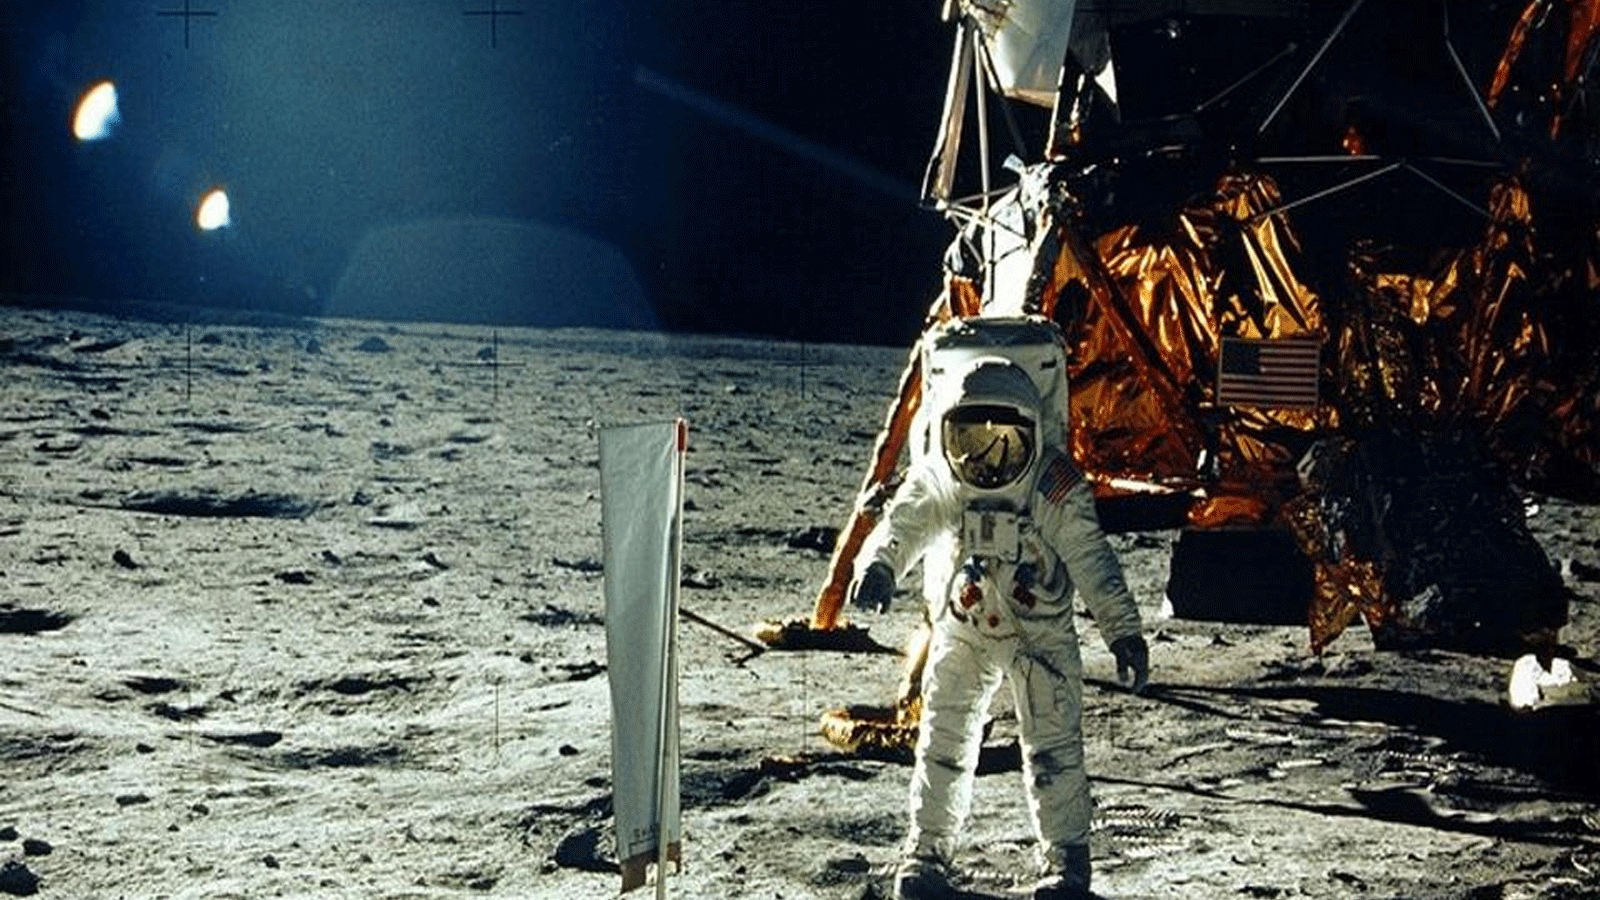 في 20 يوليو/ تموز 1969، تم الحصول على صورة من وكالة ناسا التقطها نيل أرمسترونغ، وتظهر رائد الفضاء باز ألدرين على سطح القمر